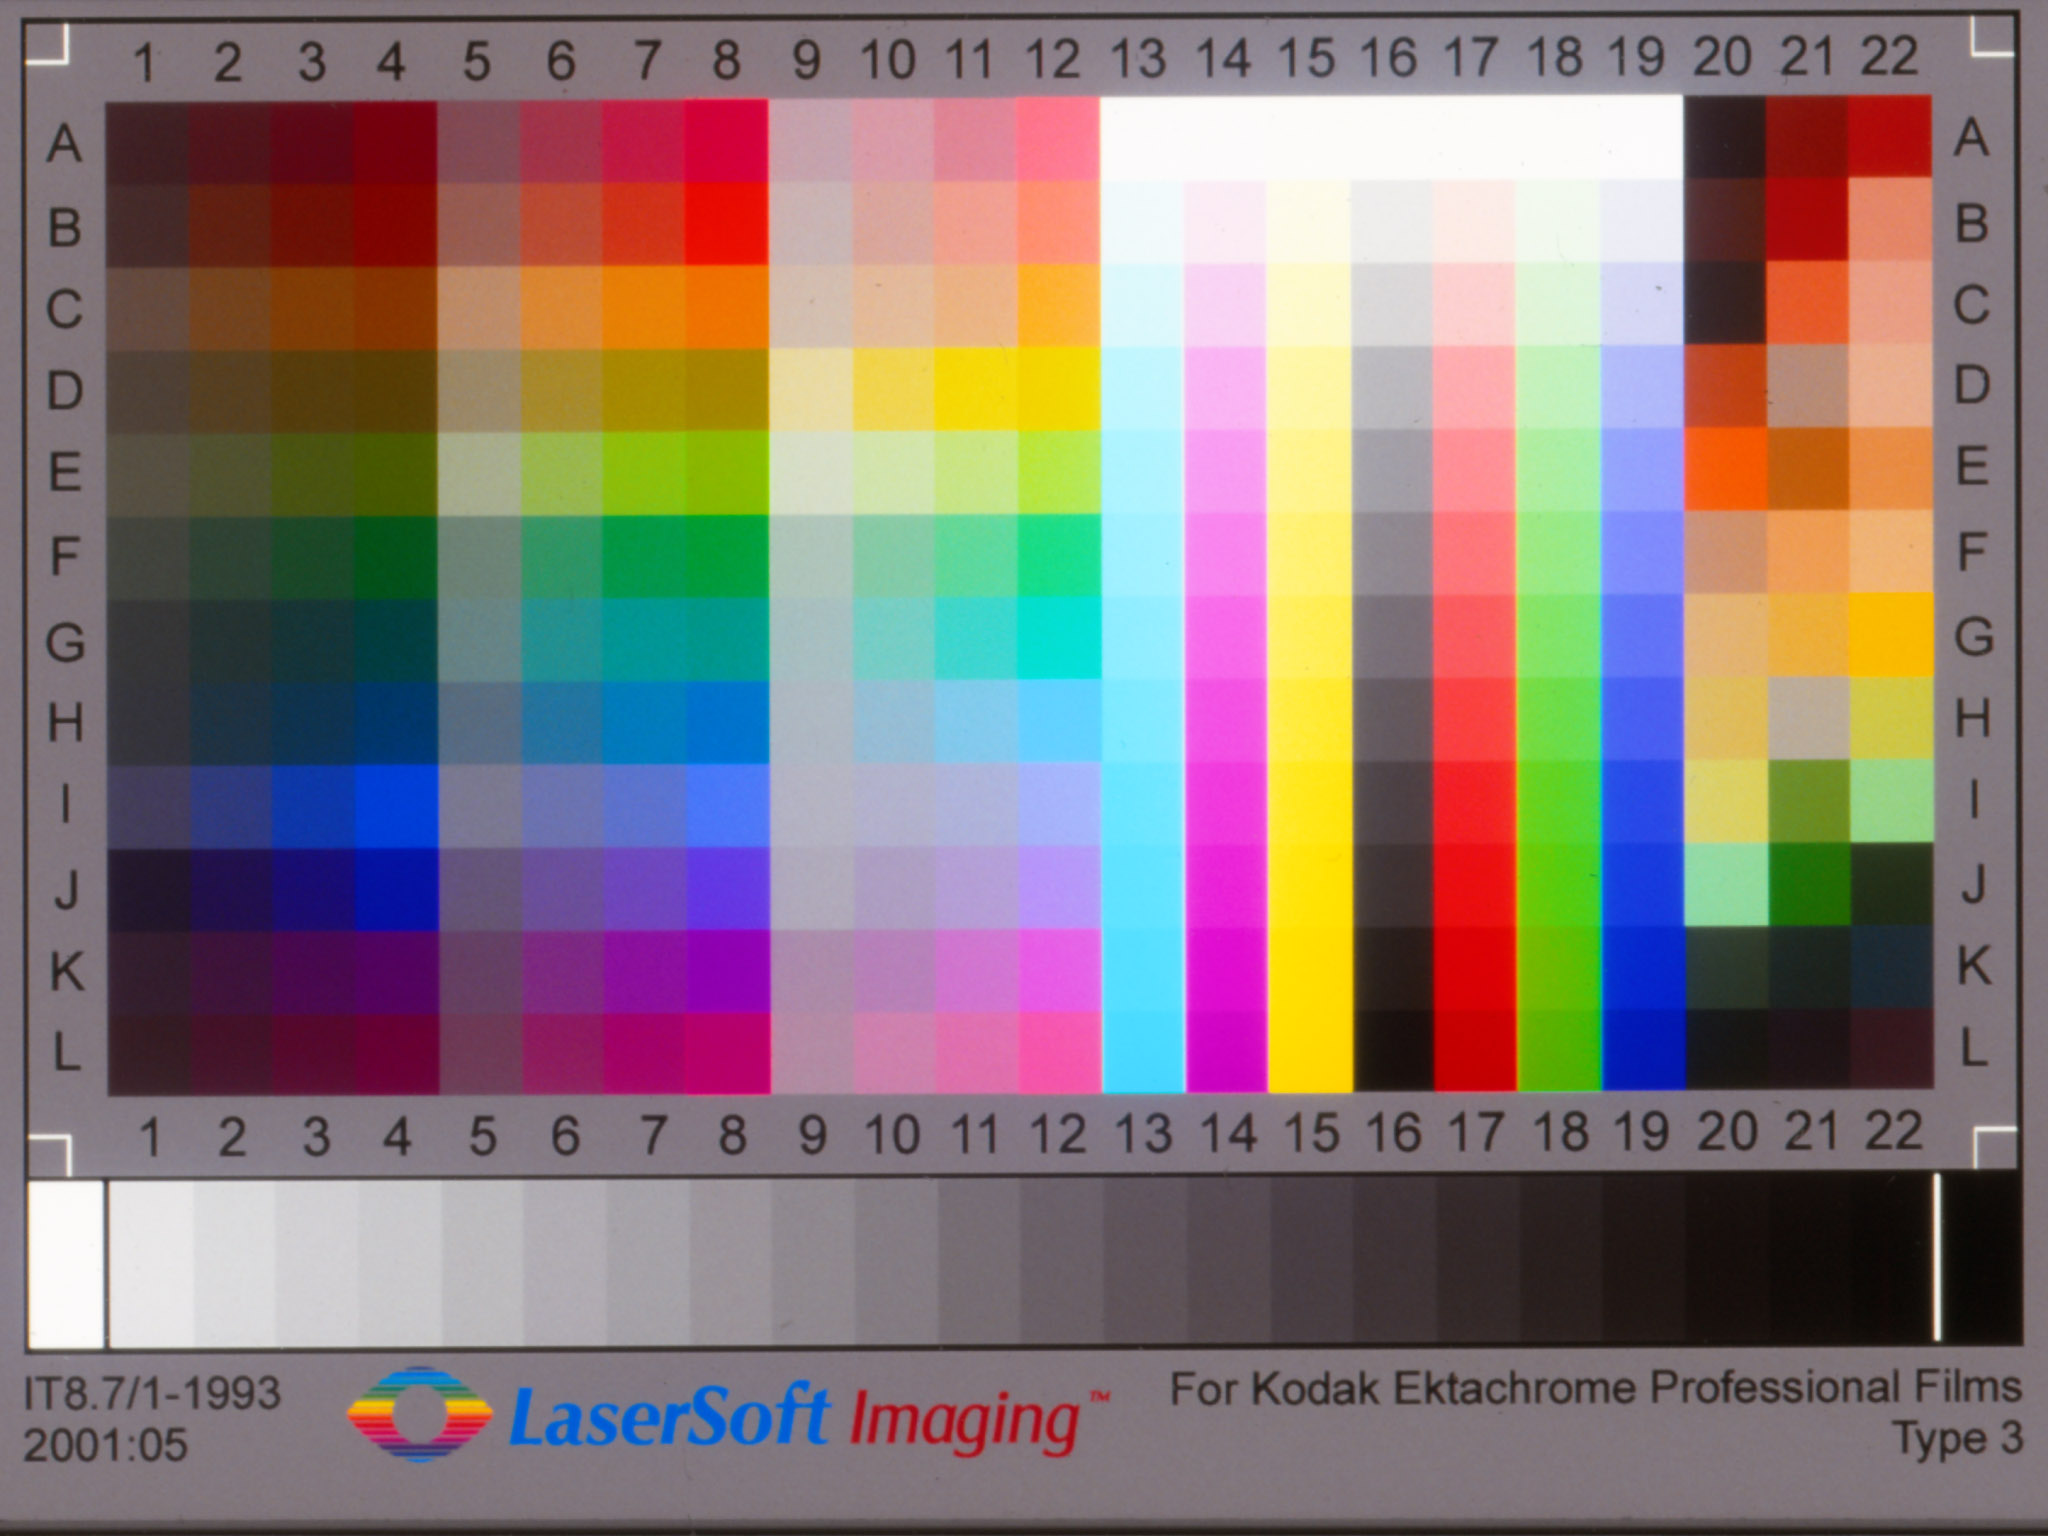 Imaging Resource Printer Review: PIXMA MP980 Printer